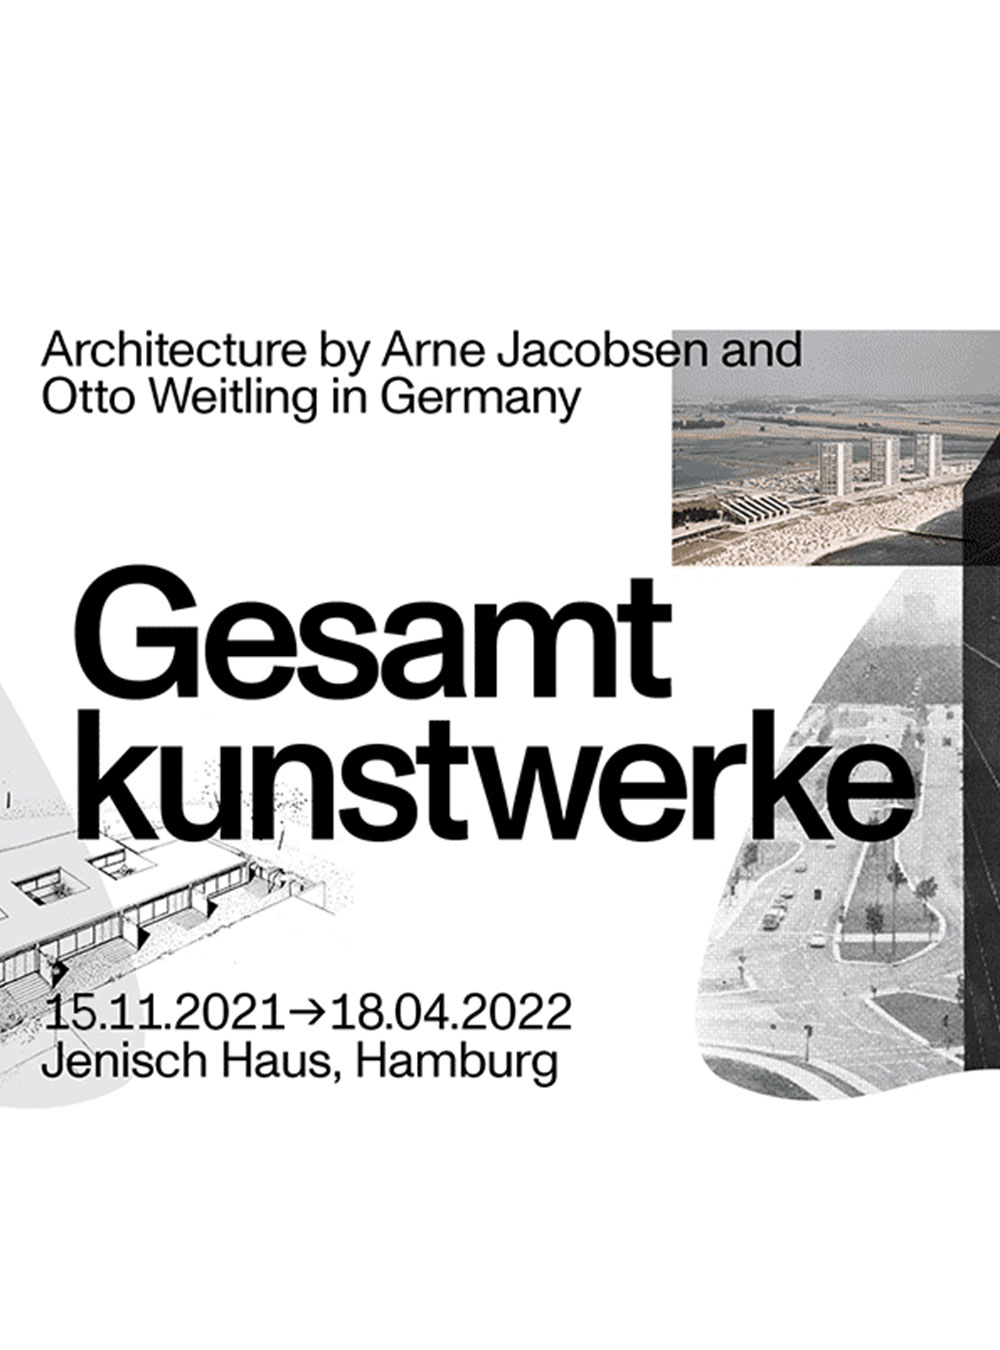 Architektur von Arne Jacobsen und Otto Weitling in Deutschland